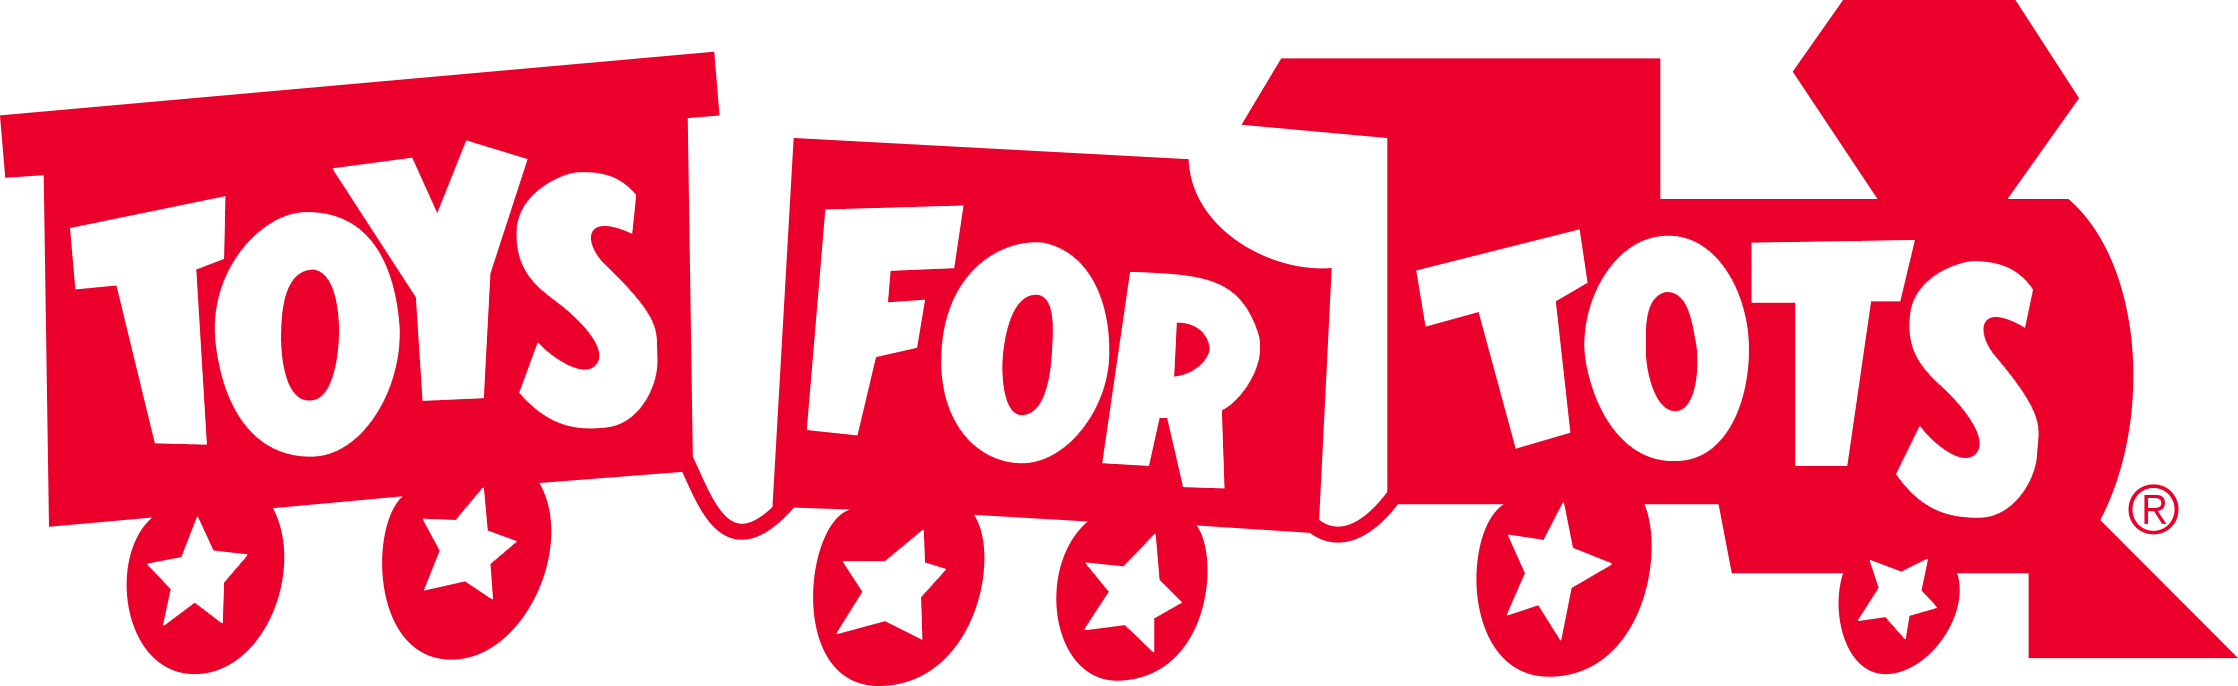 ToysForTots logo